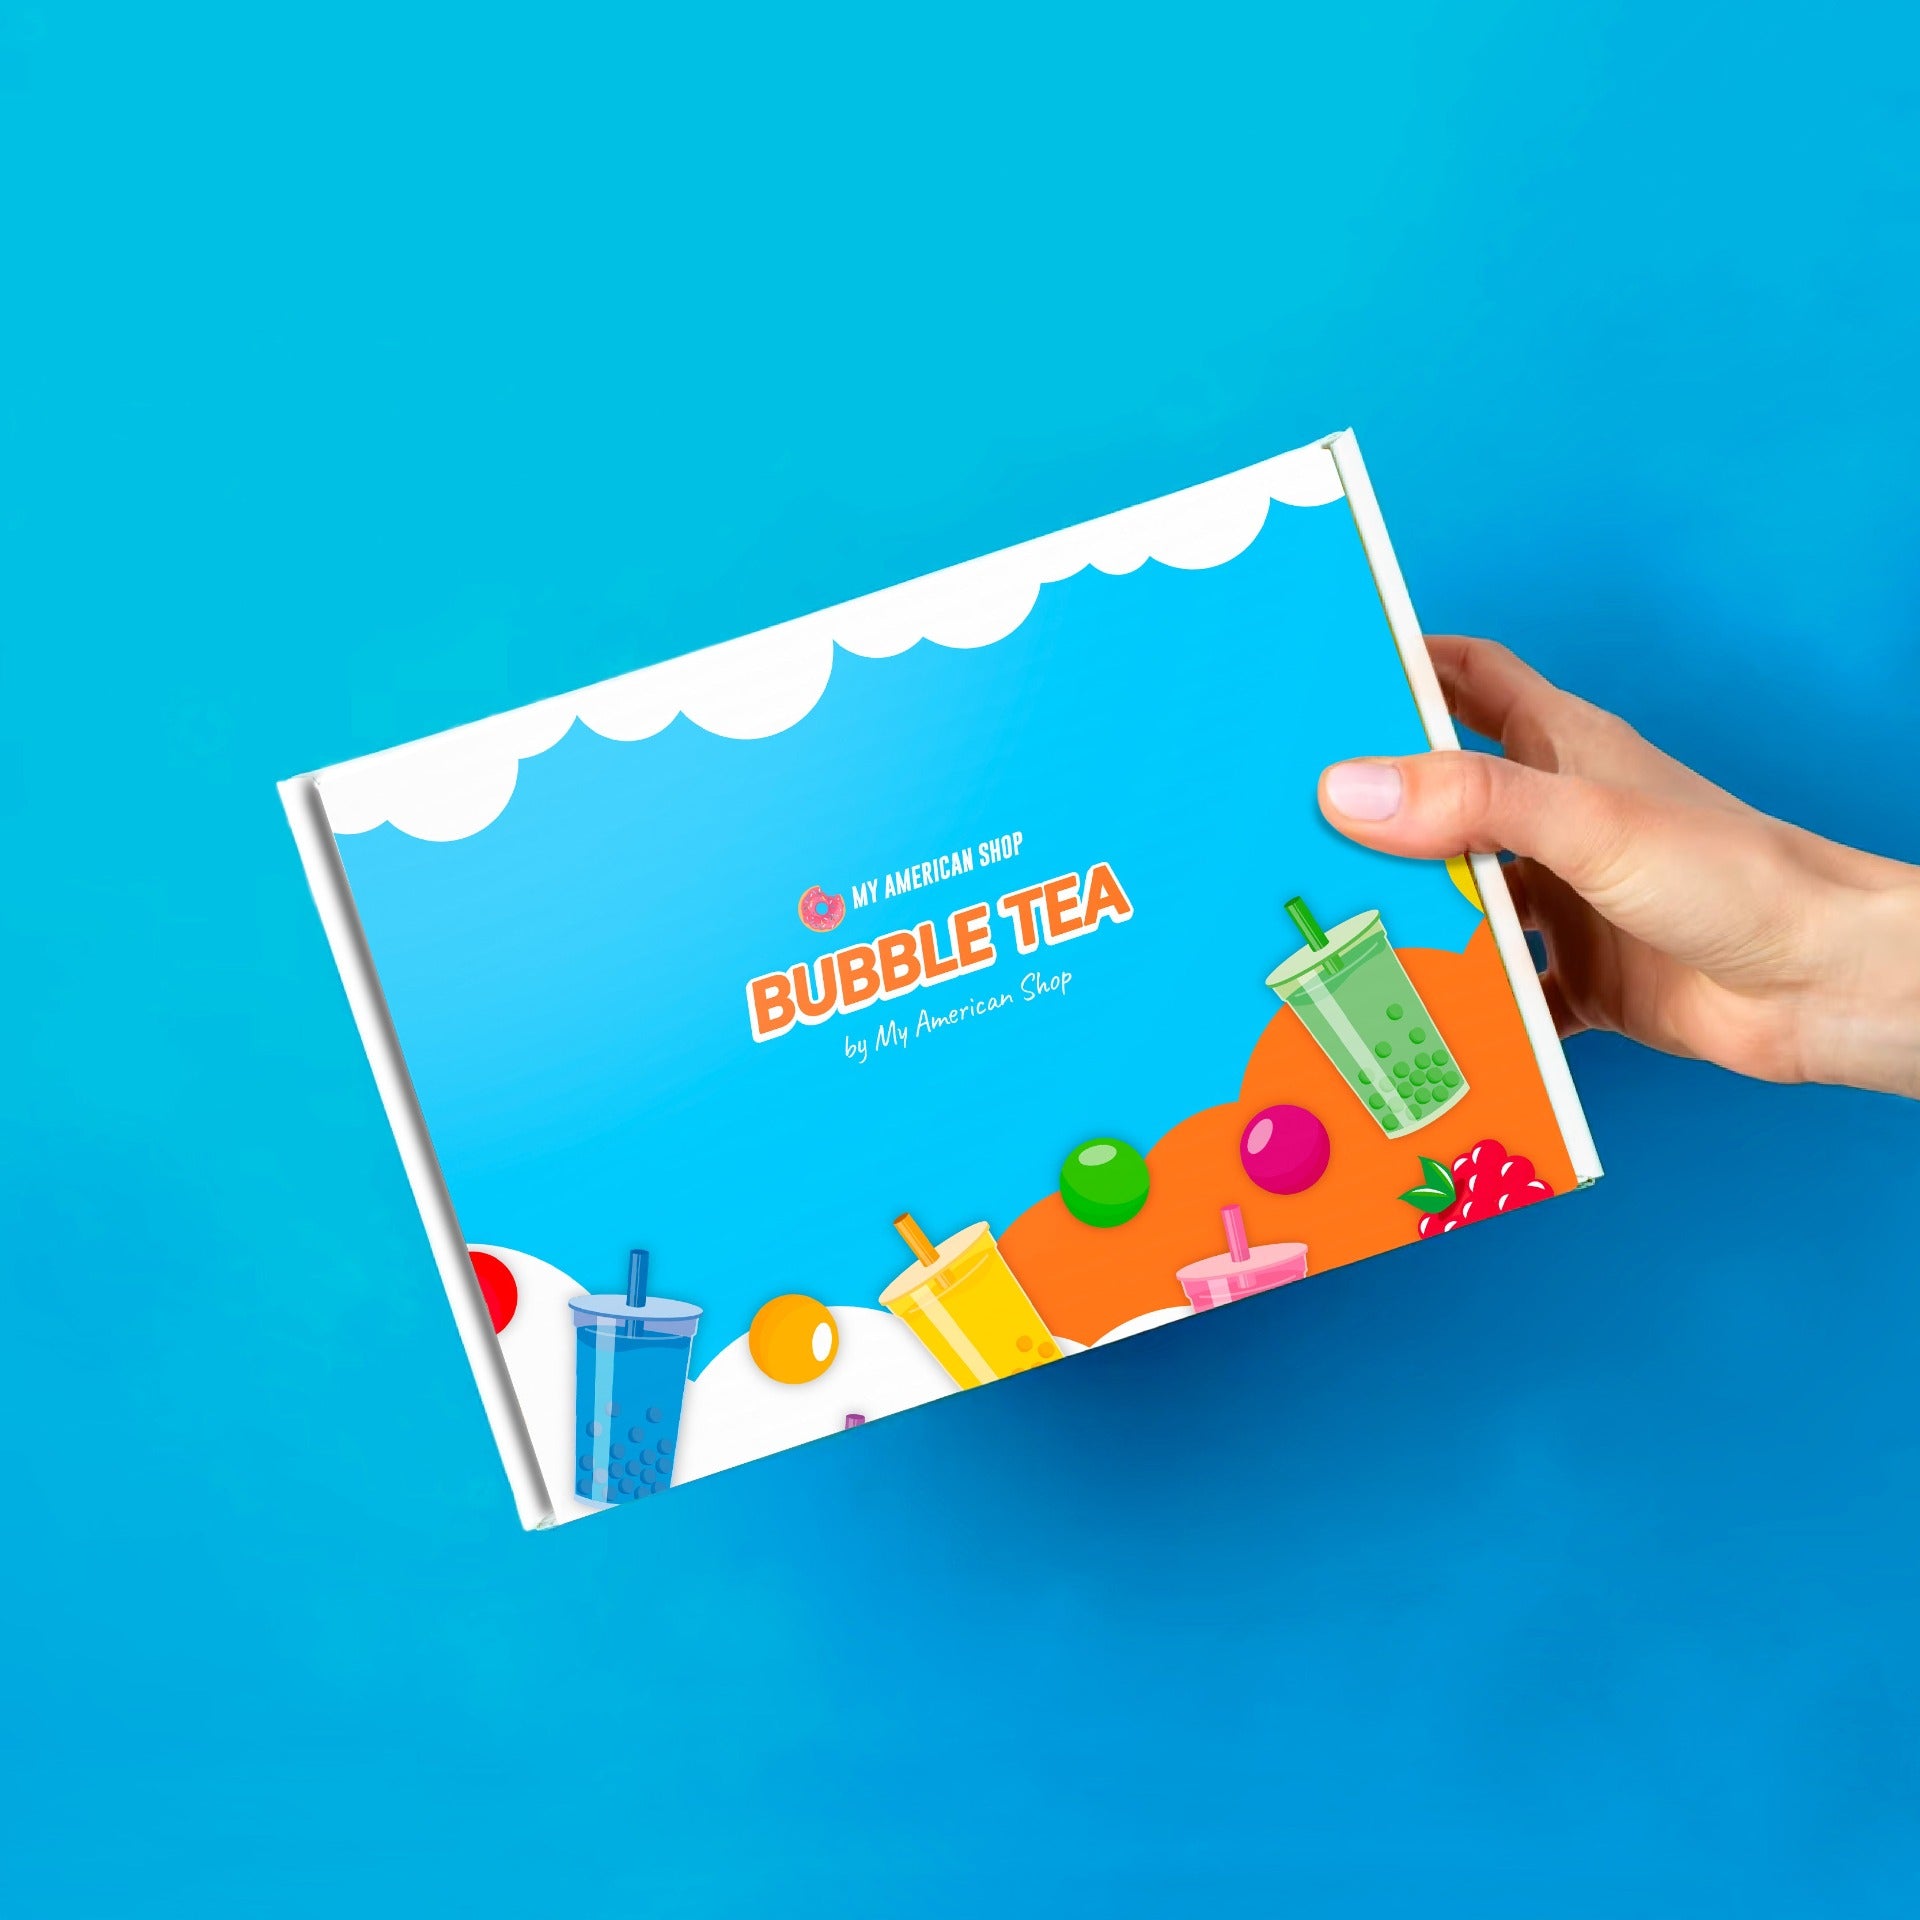 Un carton bleu et orange avec des dessins de perles et des gobelets de bubble tea très colorés, le tout sur fond bleu